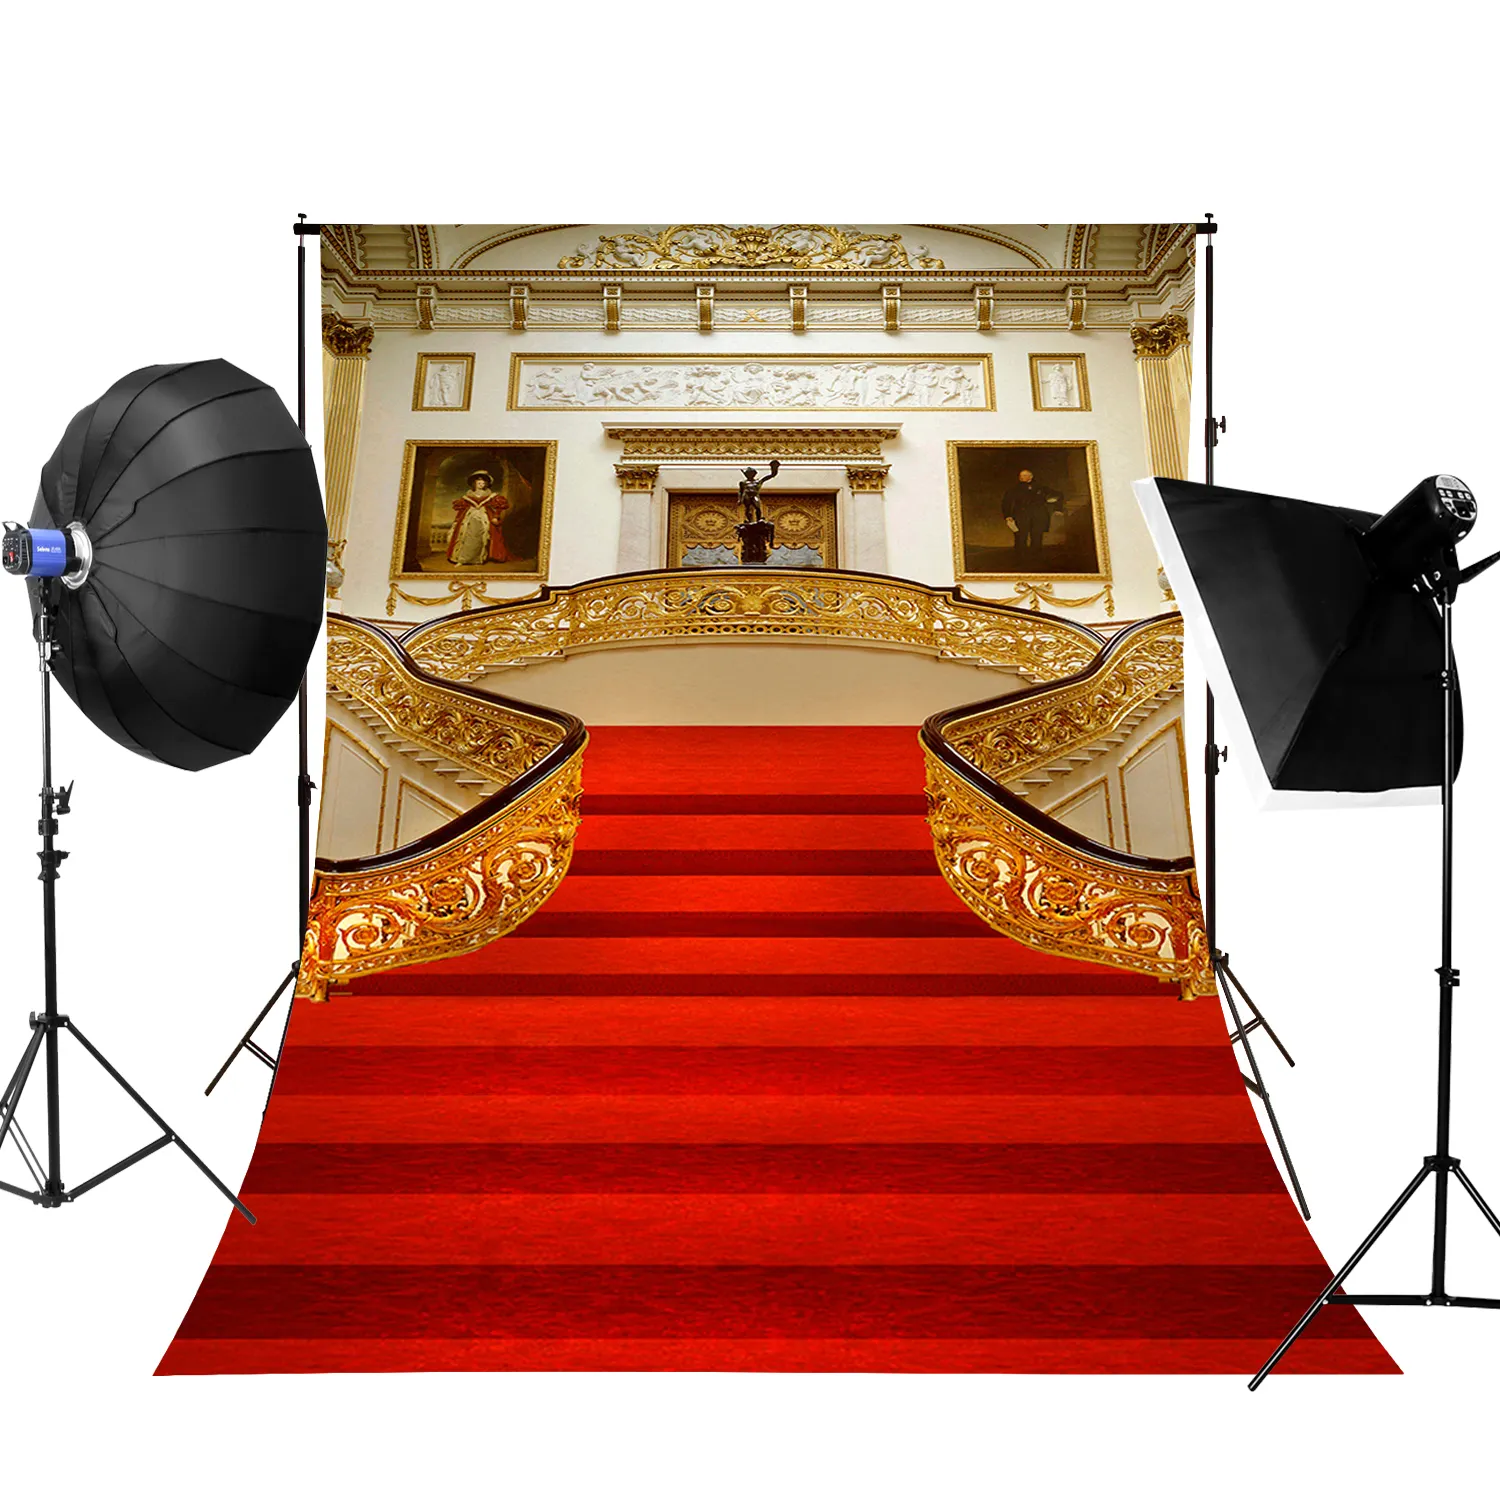 Roter Teppich Fotografie Beleuchtung Hintergrund Bühnen hintergründe für Fotostudio